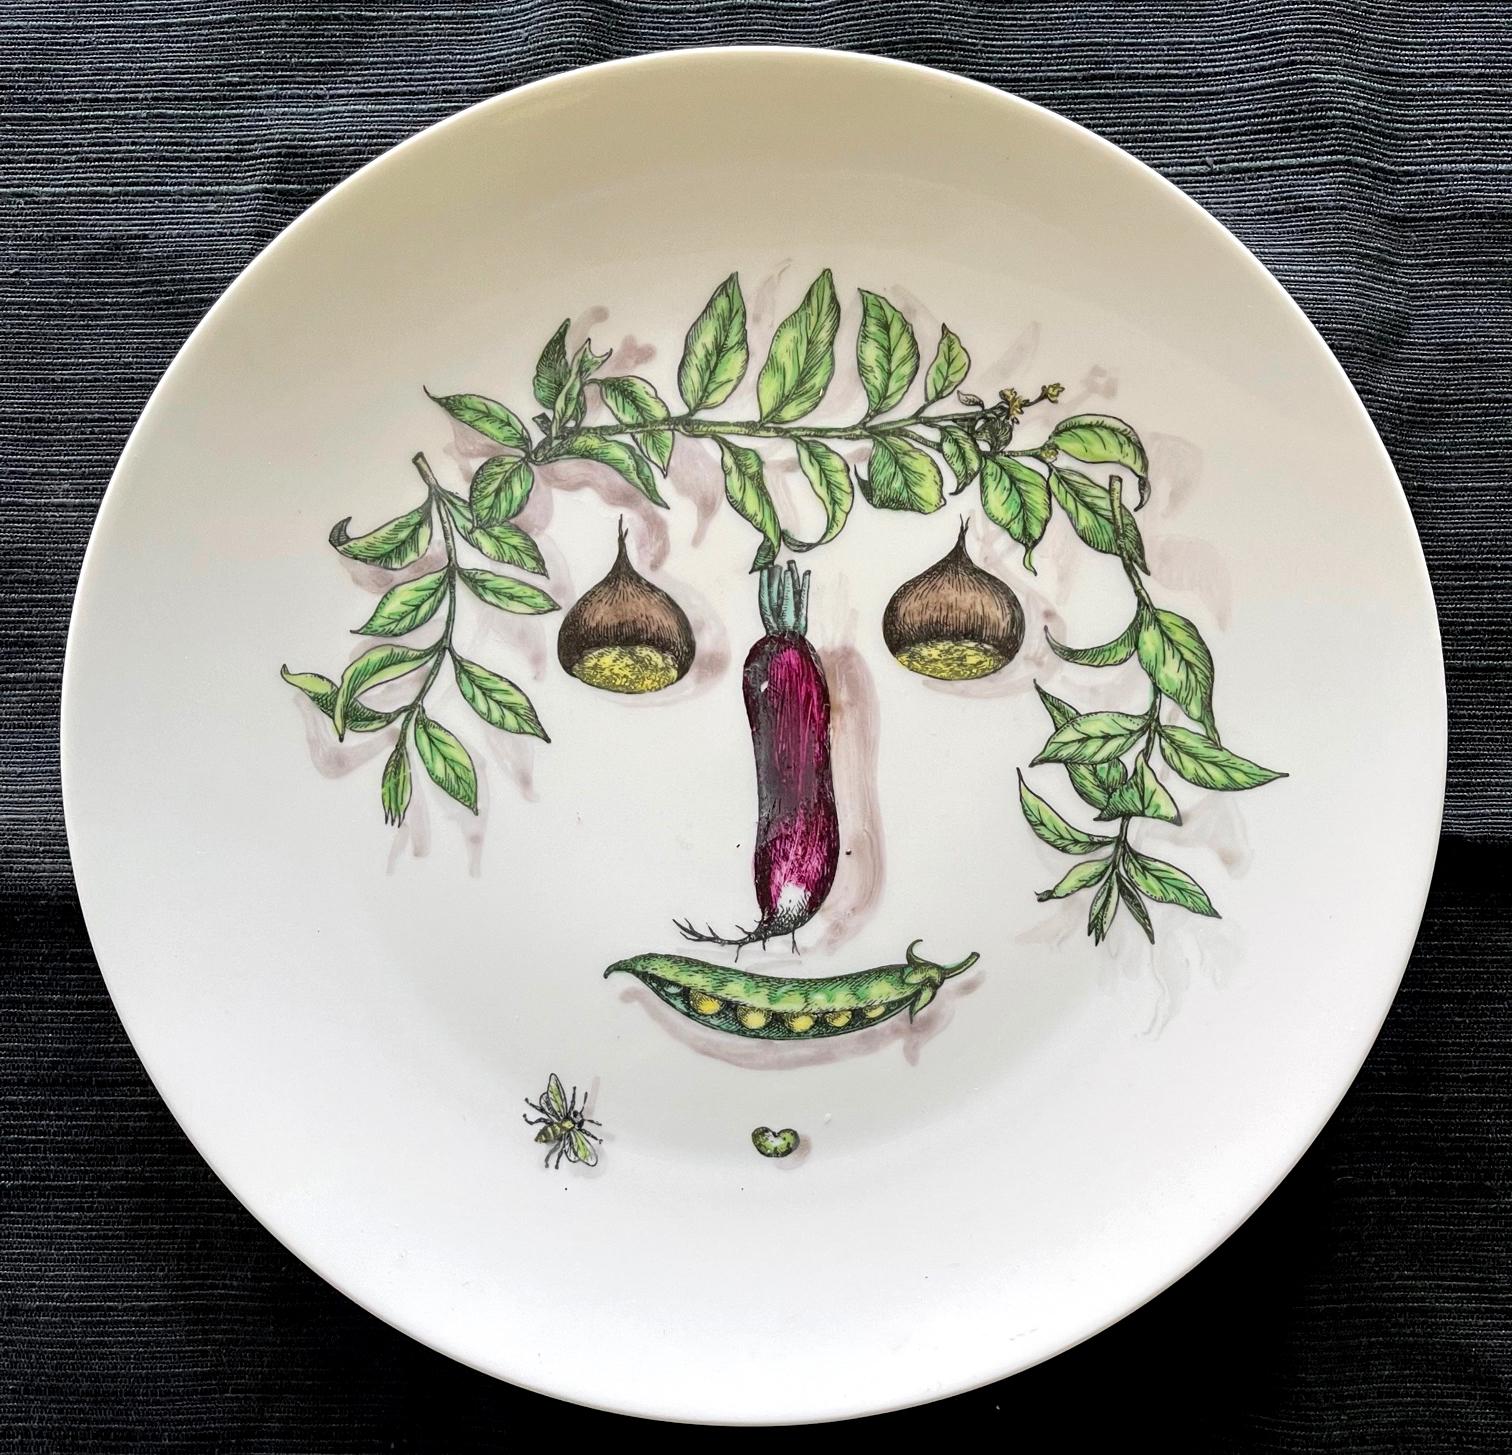 Assiette en porcelaine Fornasetti avec un visage composé de légumes arrangés. Estampillé 11, Fornasetti-Milano, Made in Italy, Arcimboldesca'